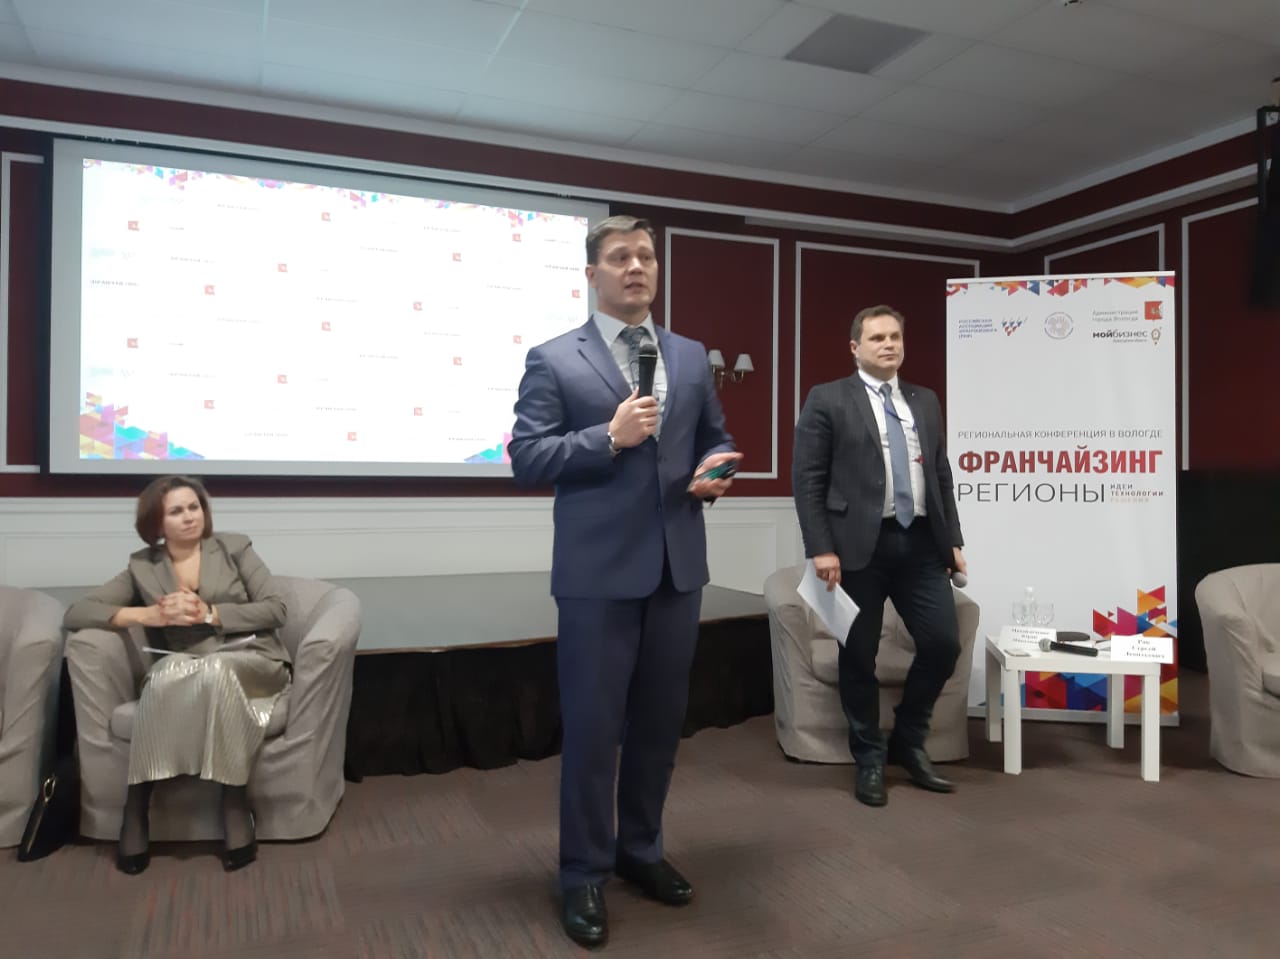 Региональная конференция по франчайзингу прошла в Вологде